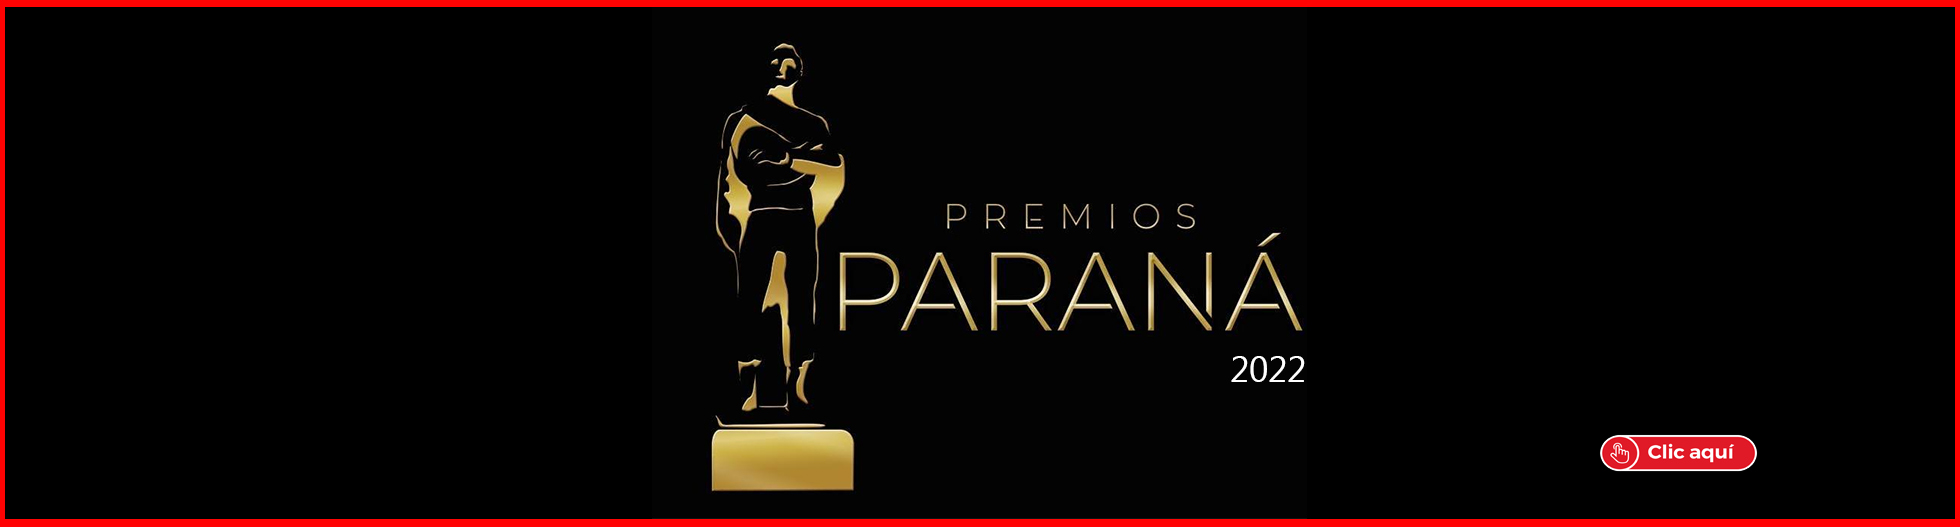 Premios Parana